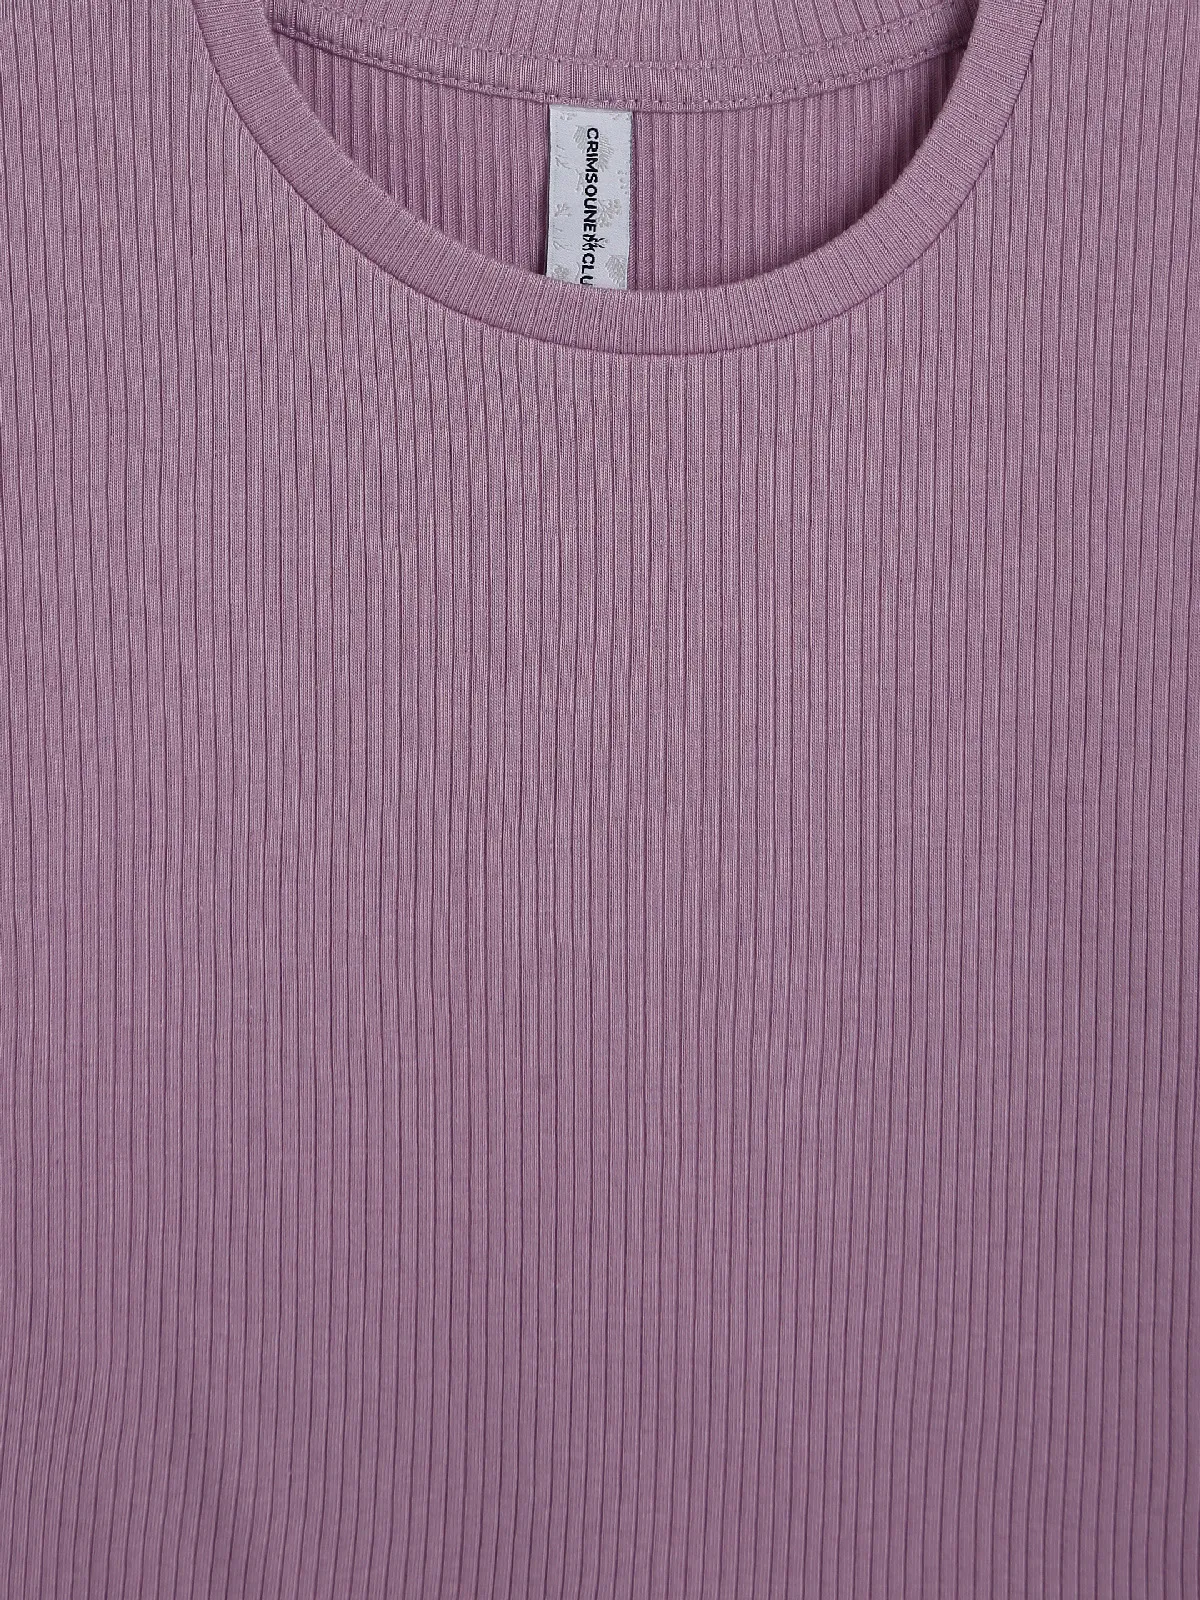 Crimsoune Club purple plain top